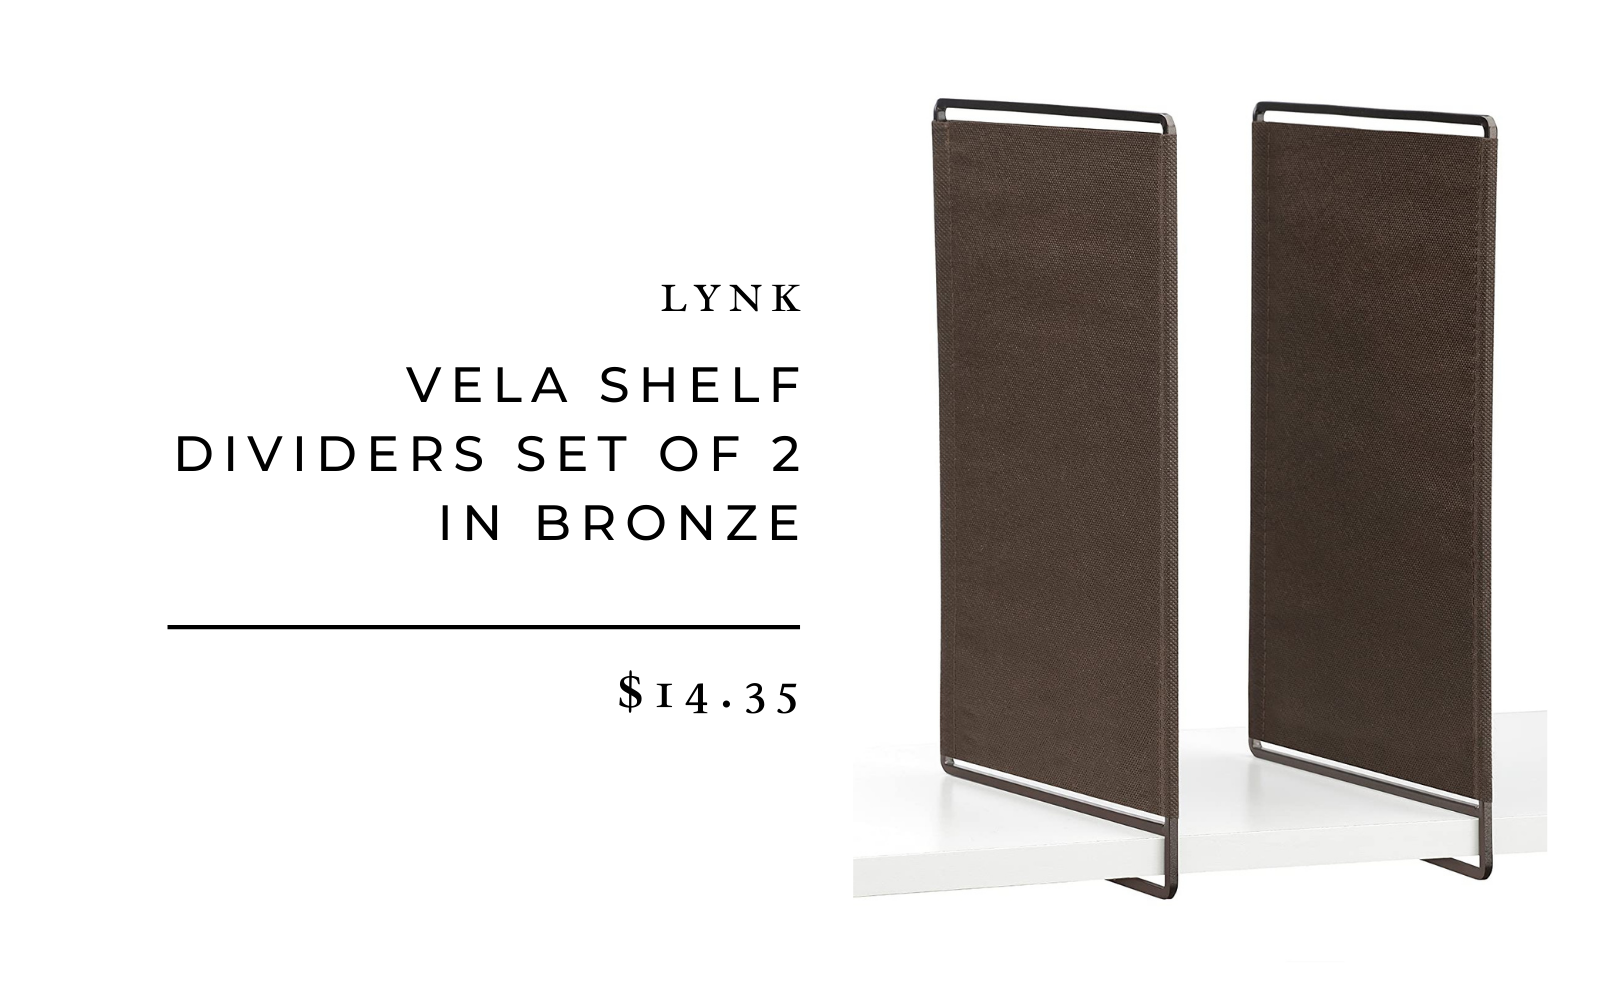 Lynk Vela Shelf Dividers Set of 2 in Bronze